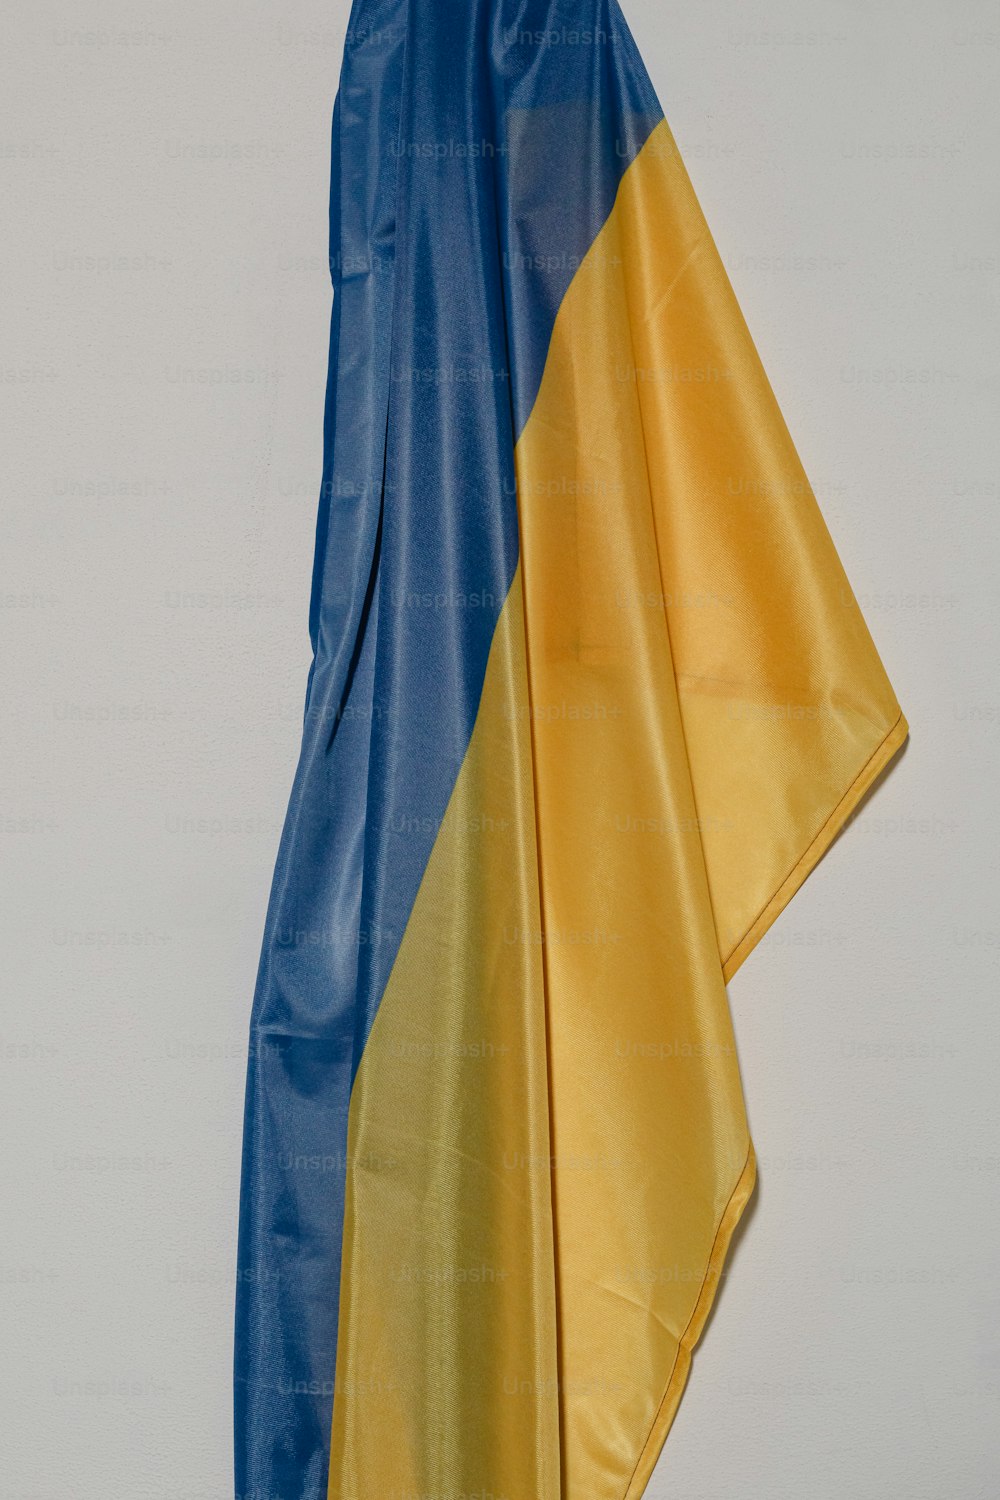 Un drapeau bleu et jaune accroché au mur